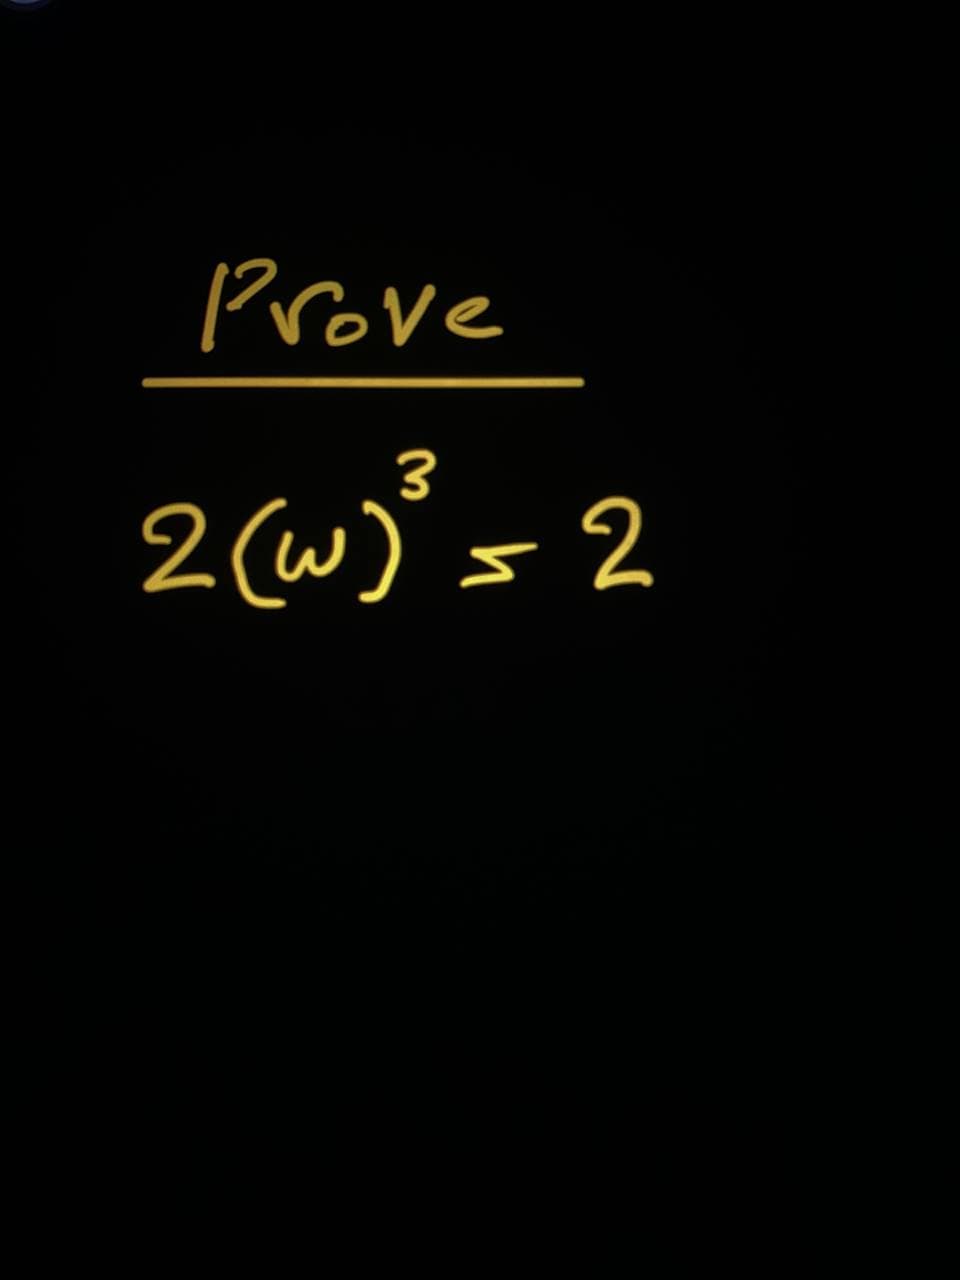 Prove
2(w° = 2
3
